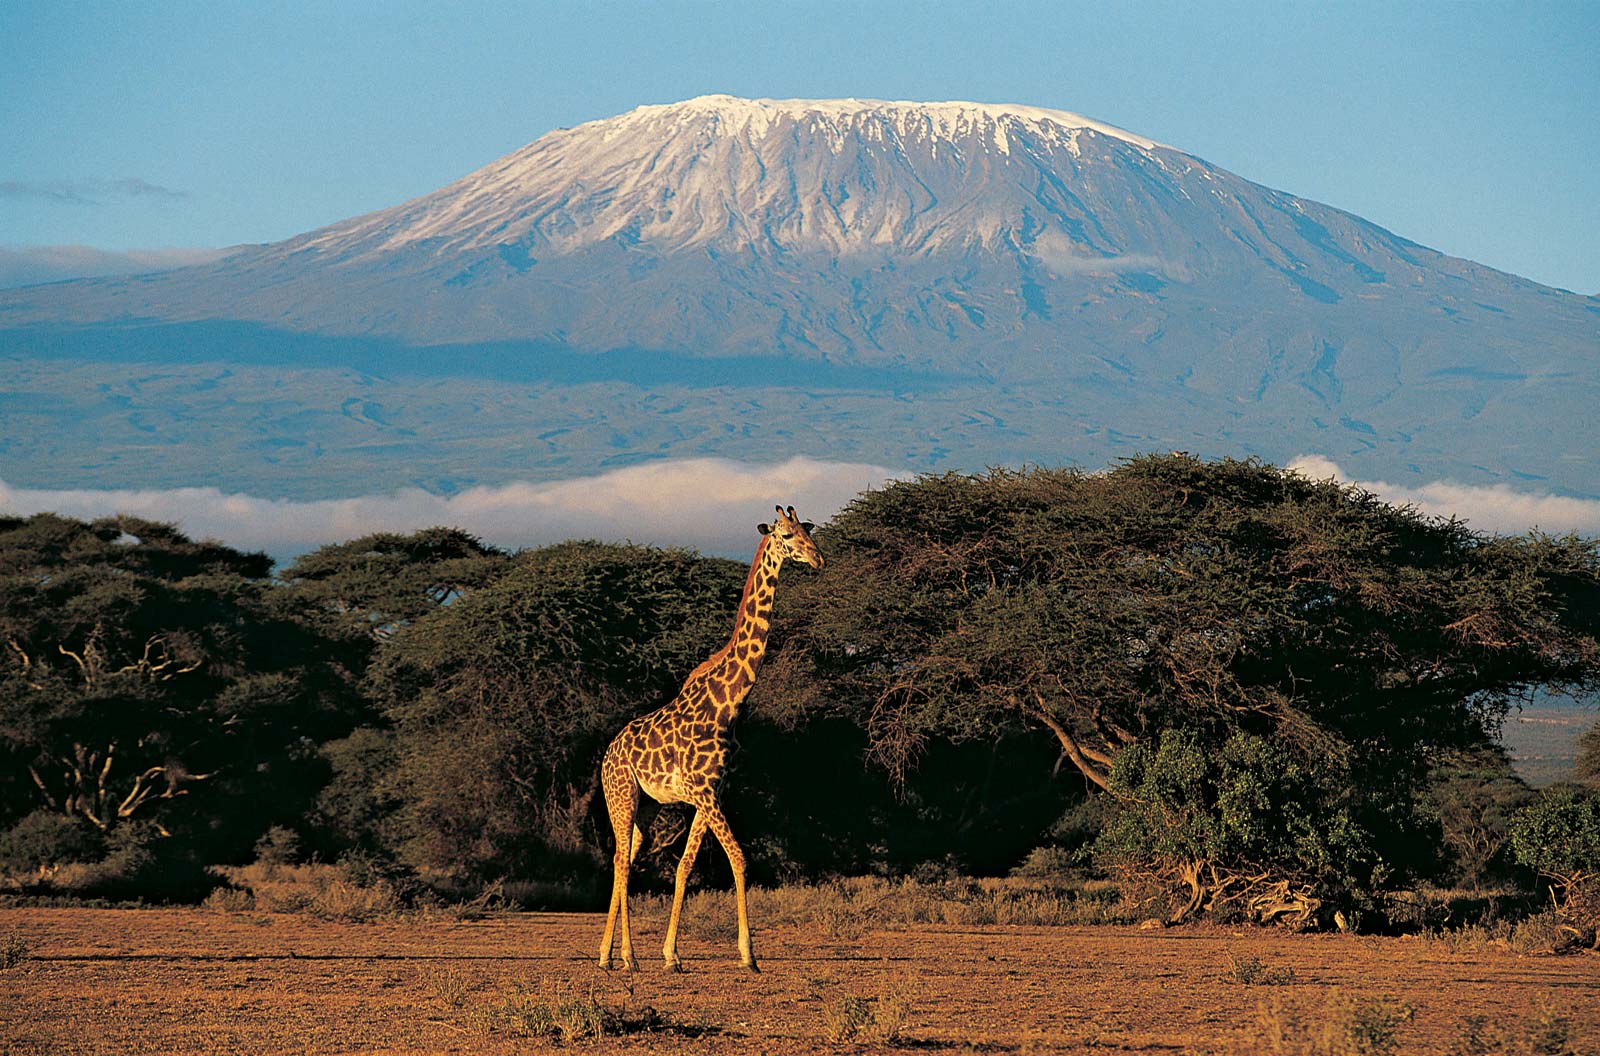 Mt. Kilimanjaro's image 1